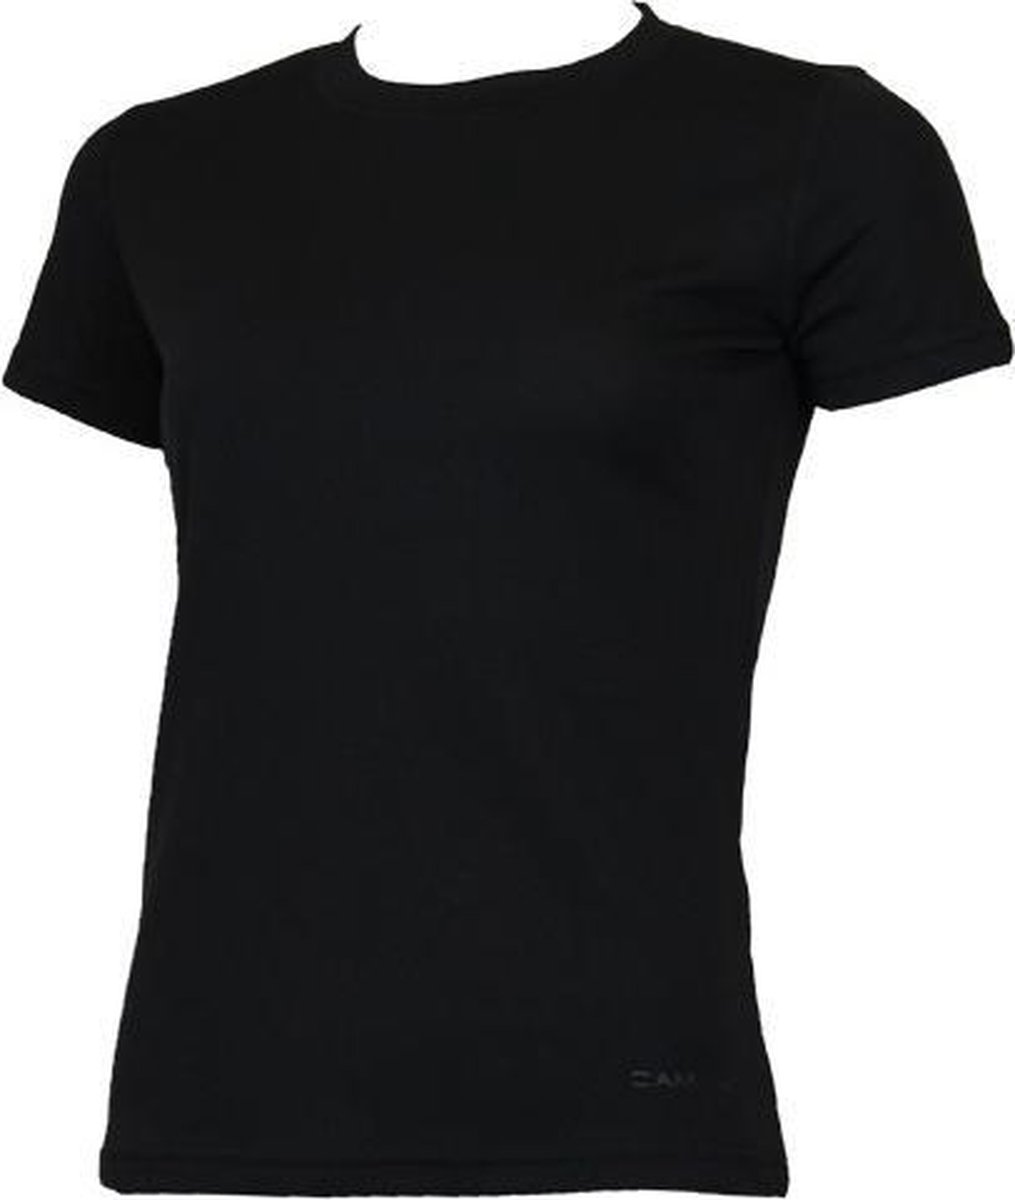 Campri Thermoshirt met korte mouw - Dames - Black (020) - maat S